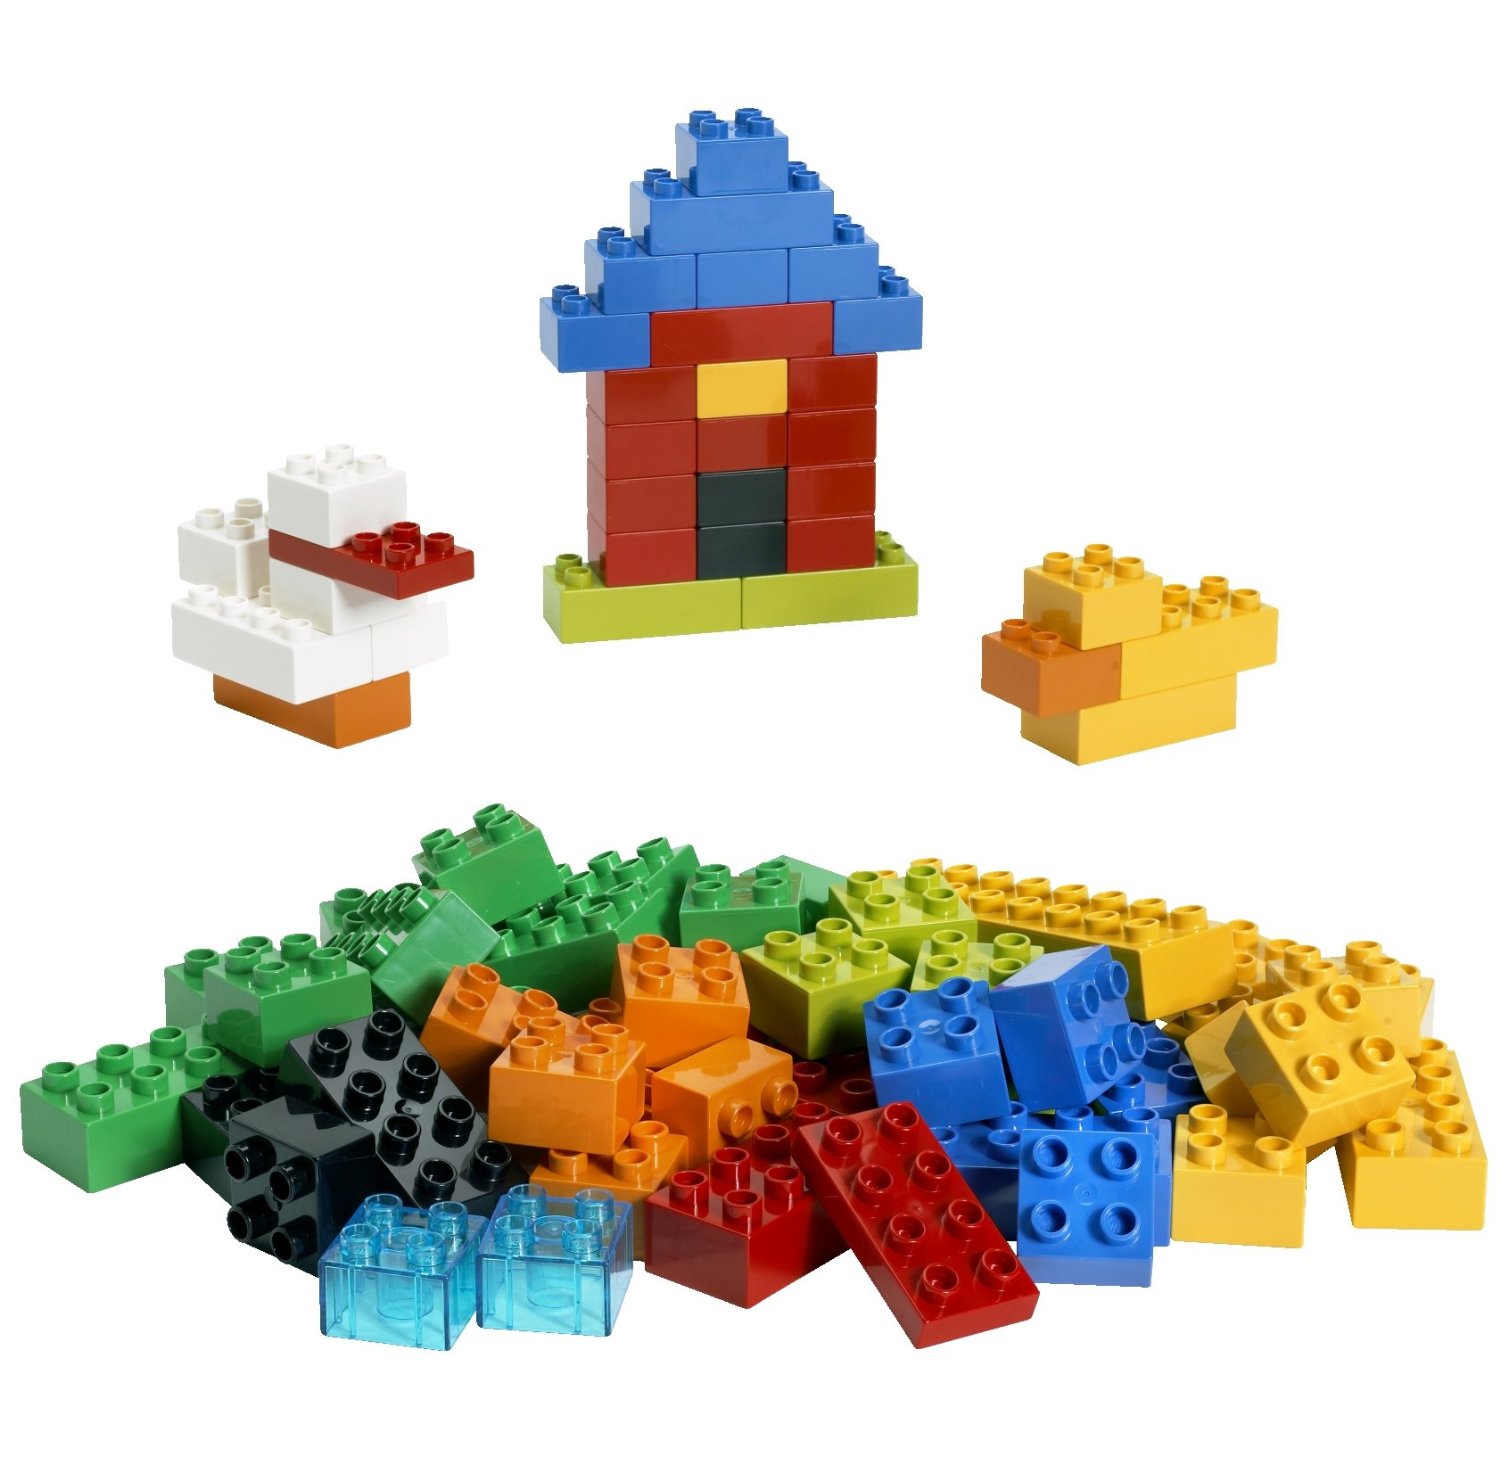 レゴ 赤青バケツに変わるオススメセットを探しました 是非参考にして下さい レゴをより楽しく遊ぶ為にオススメなブロックを紹介